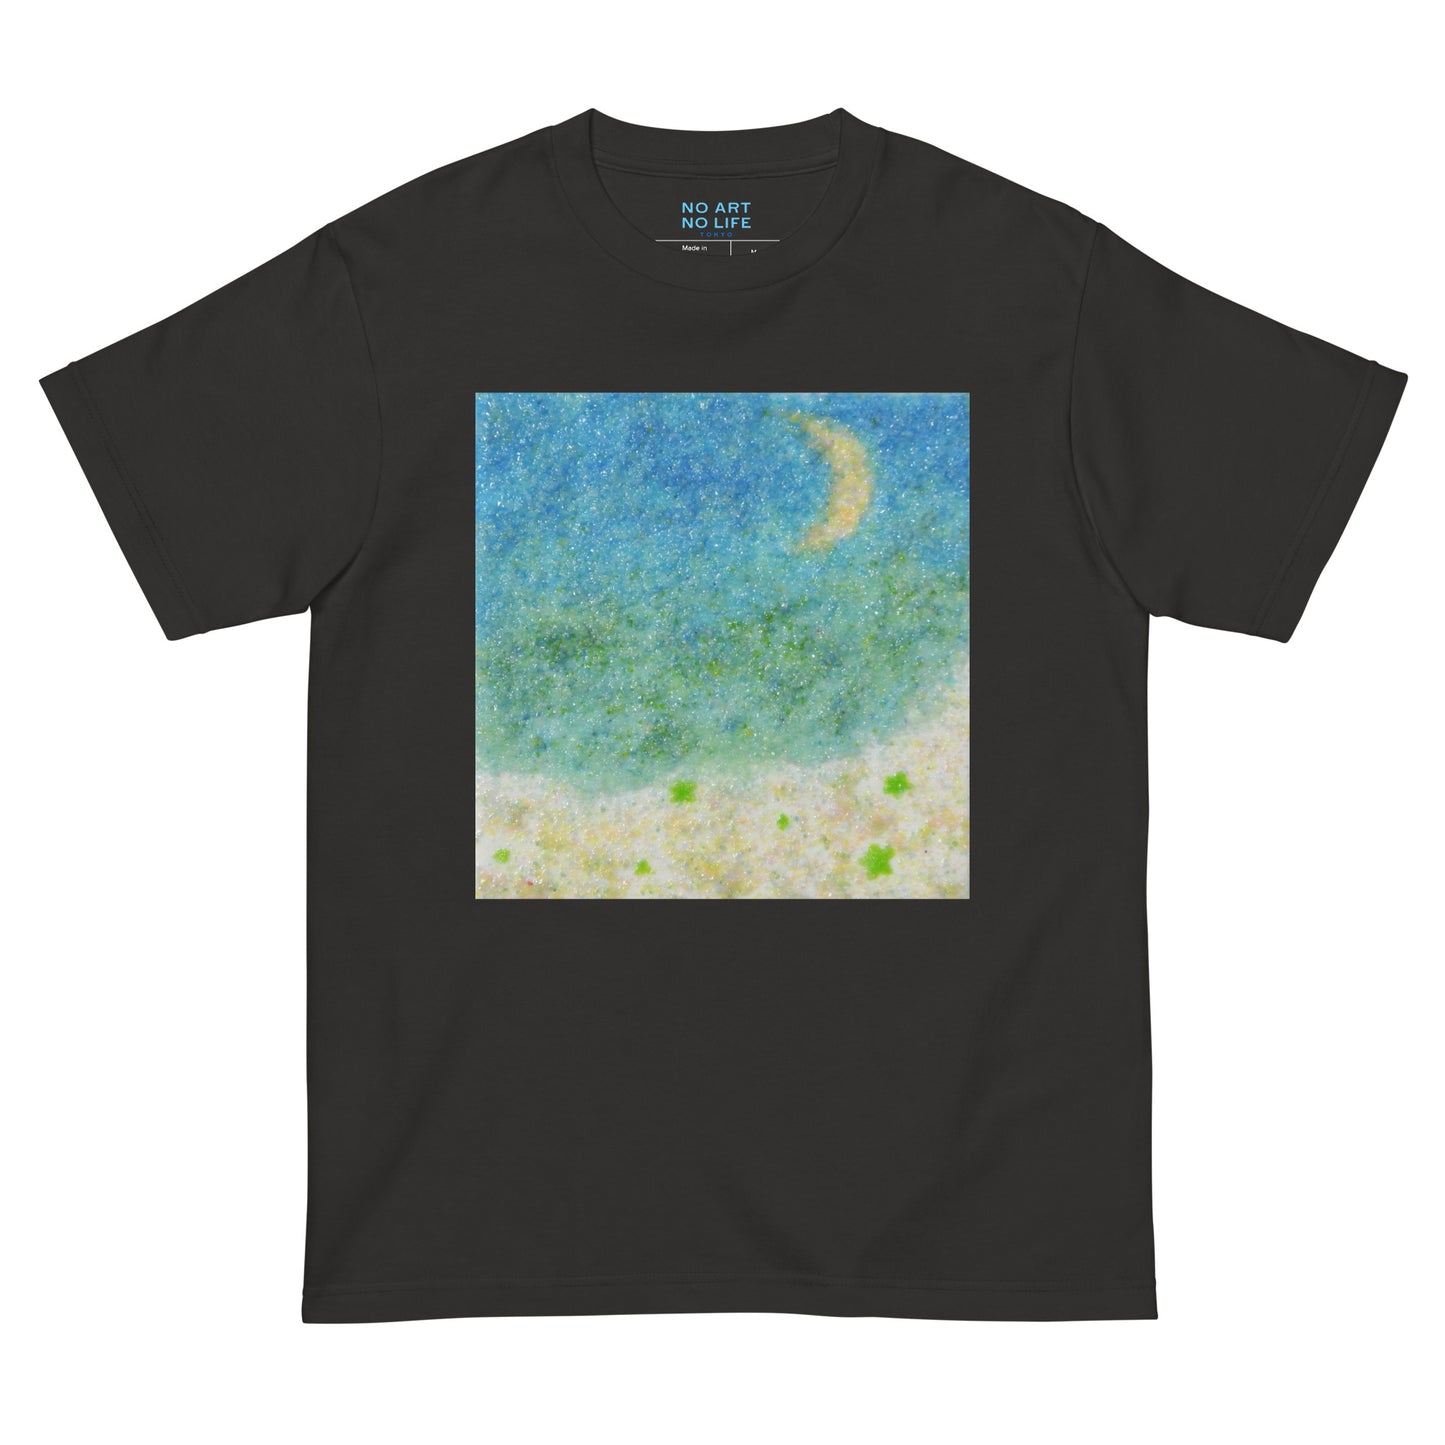 031-村山 千可子-海と月-前面プリントTシャツ-アートをデザイン